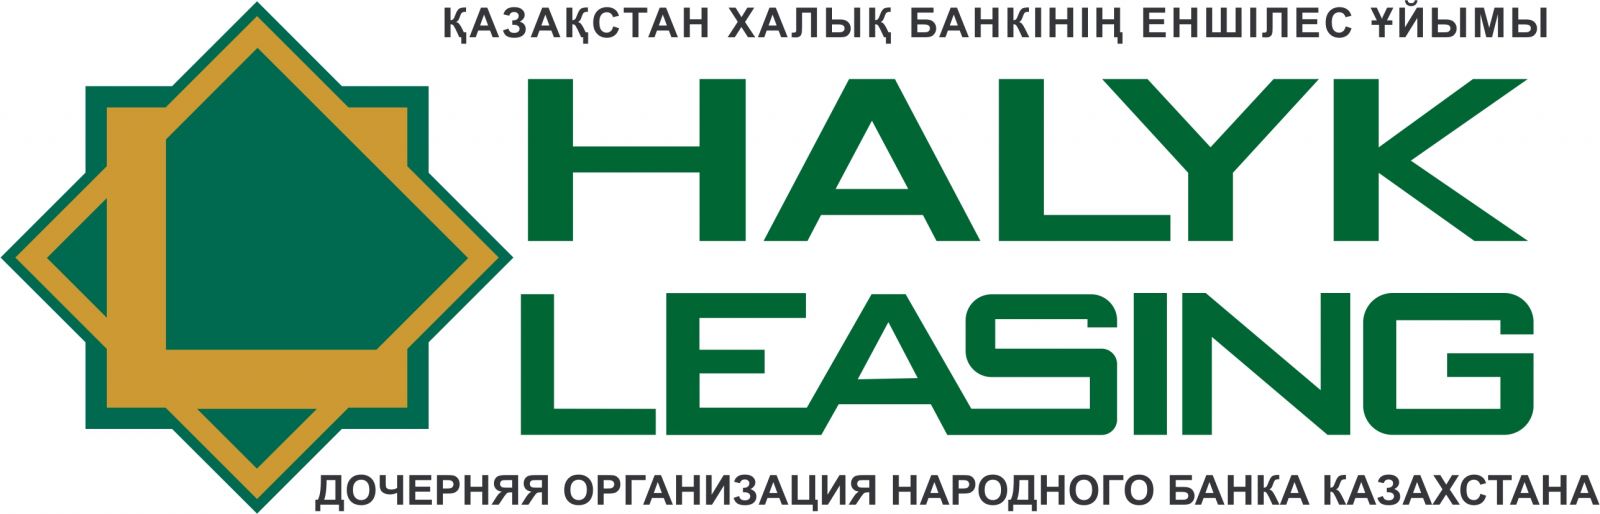 Халык страхование. Халык банк. Халык банк Казахстан. Халык банк логотип. Halyk Leasing.